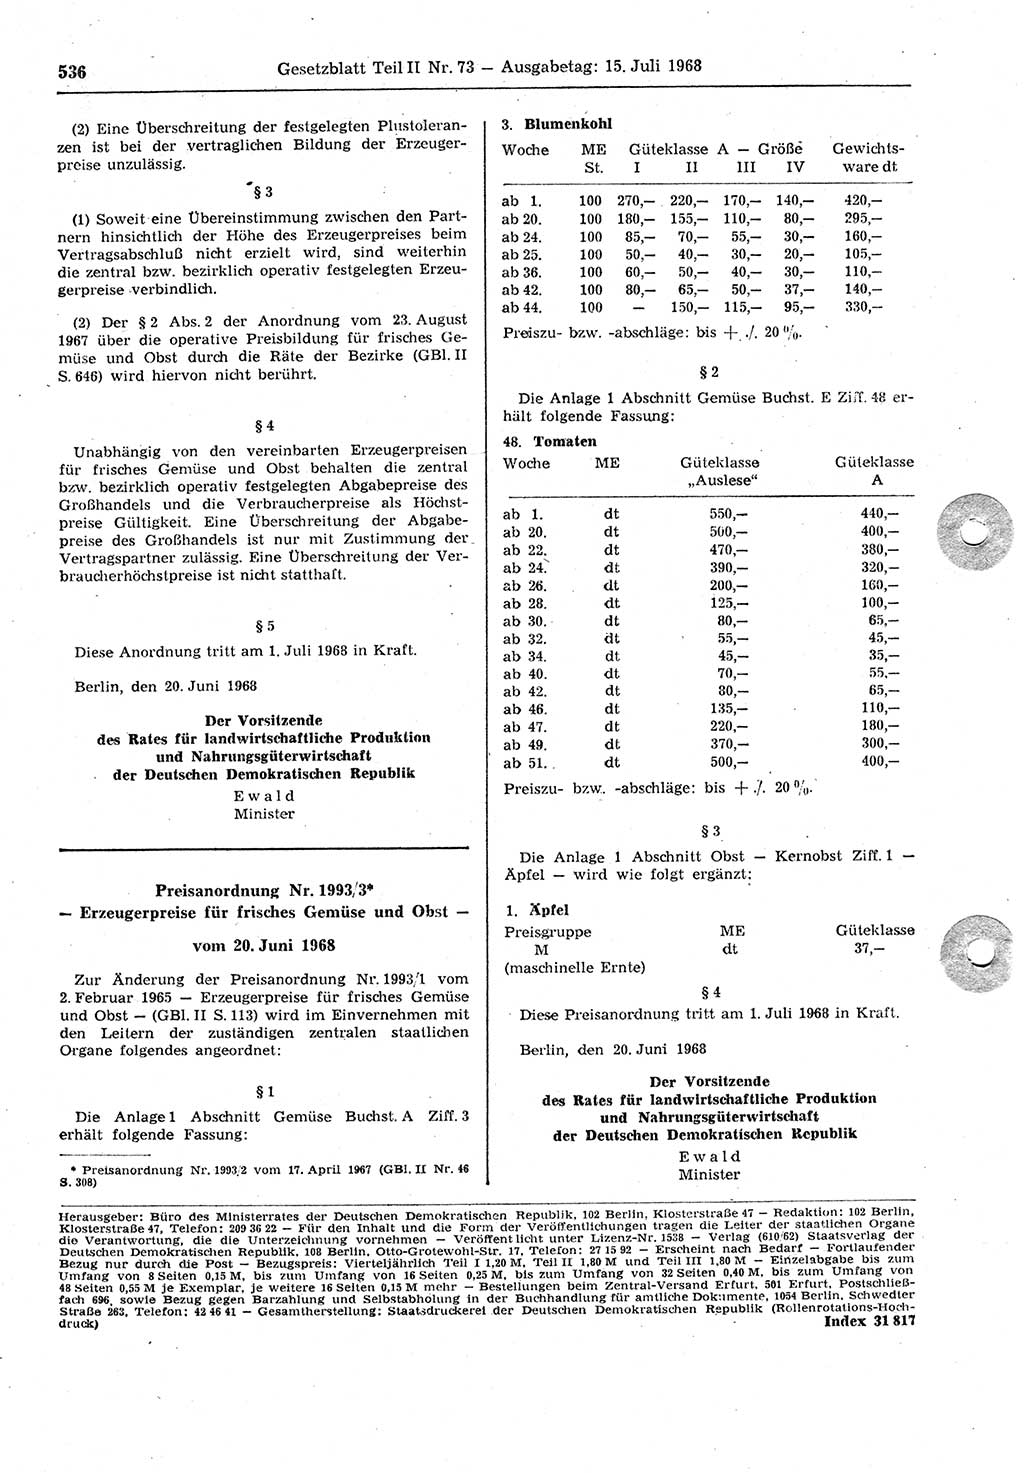 Gesetzblatt (GBl.) der Deutschen Demokratischen Republik (DDR) Teil ⅠⅠ 1968, Seite 536 (GBl. DDR ⅠⅠ 1968, S. 536)